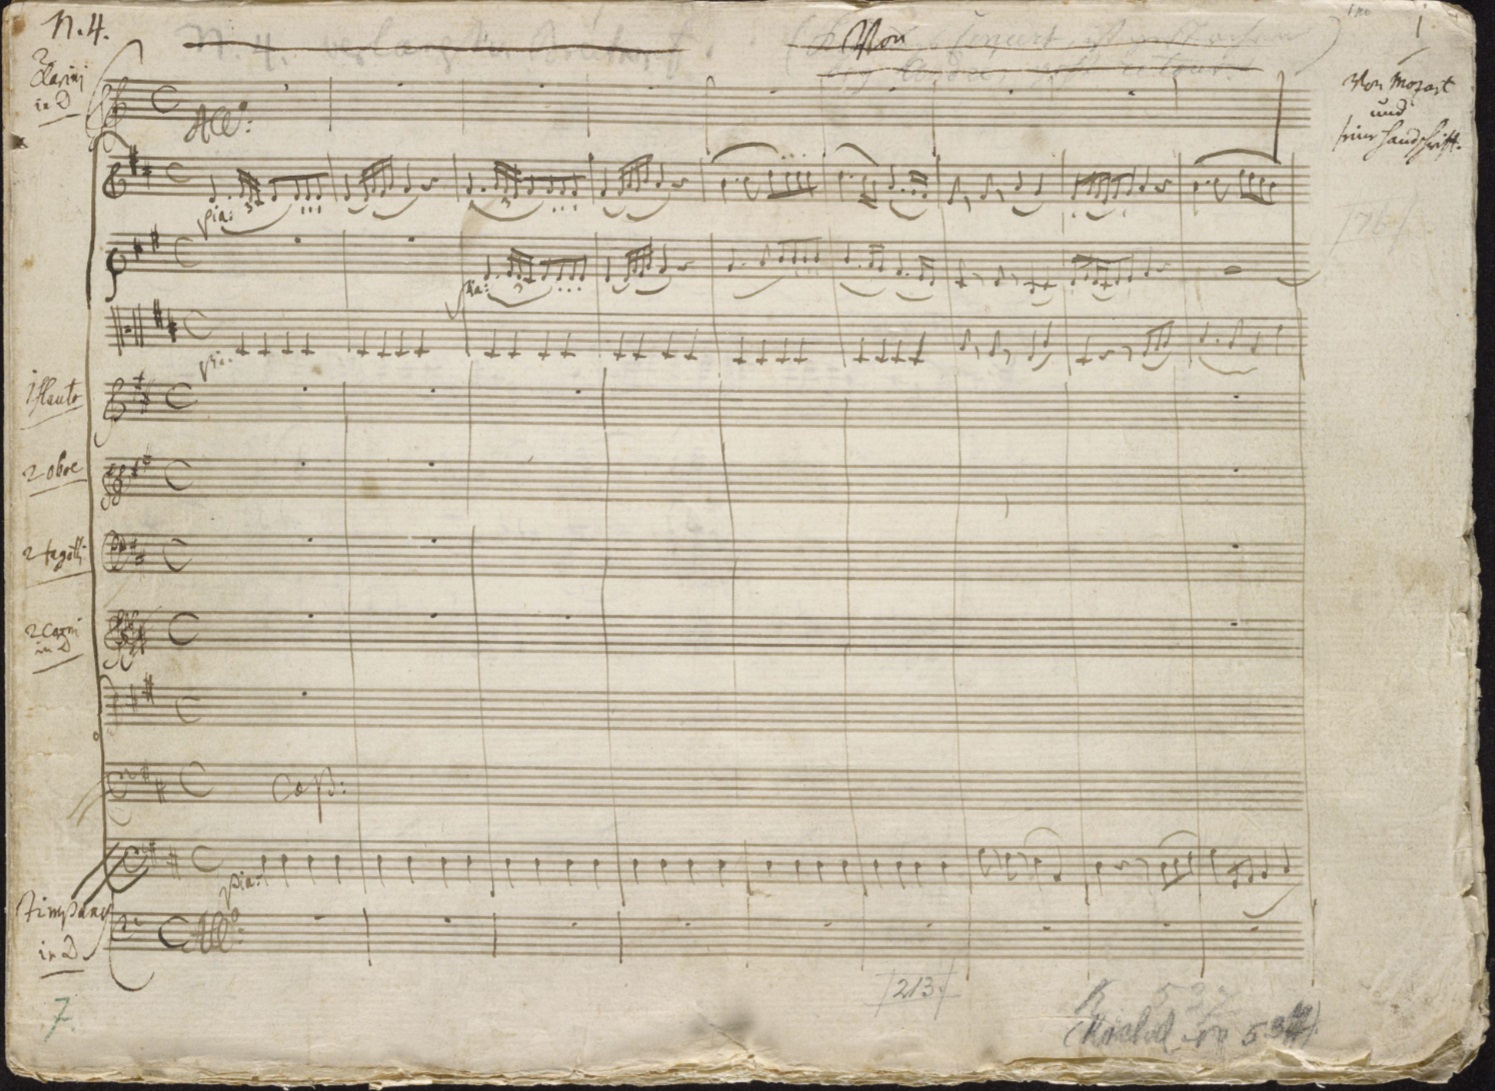 Piano Concerto No. 26 (Mozart) - Wikipedia